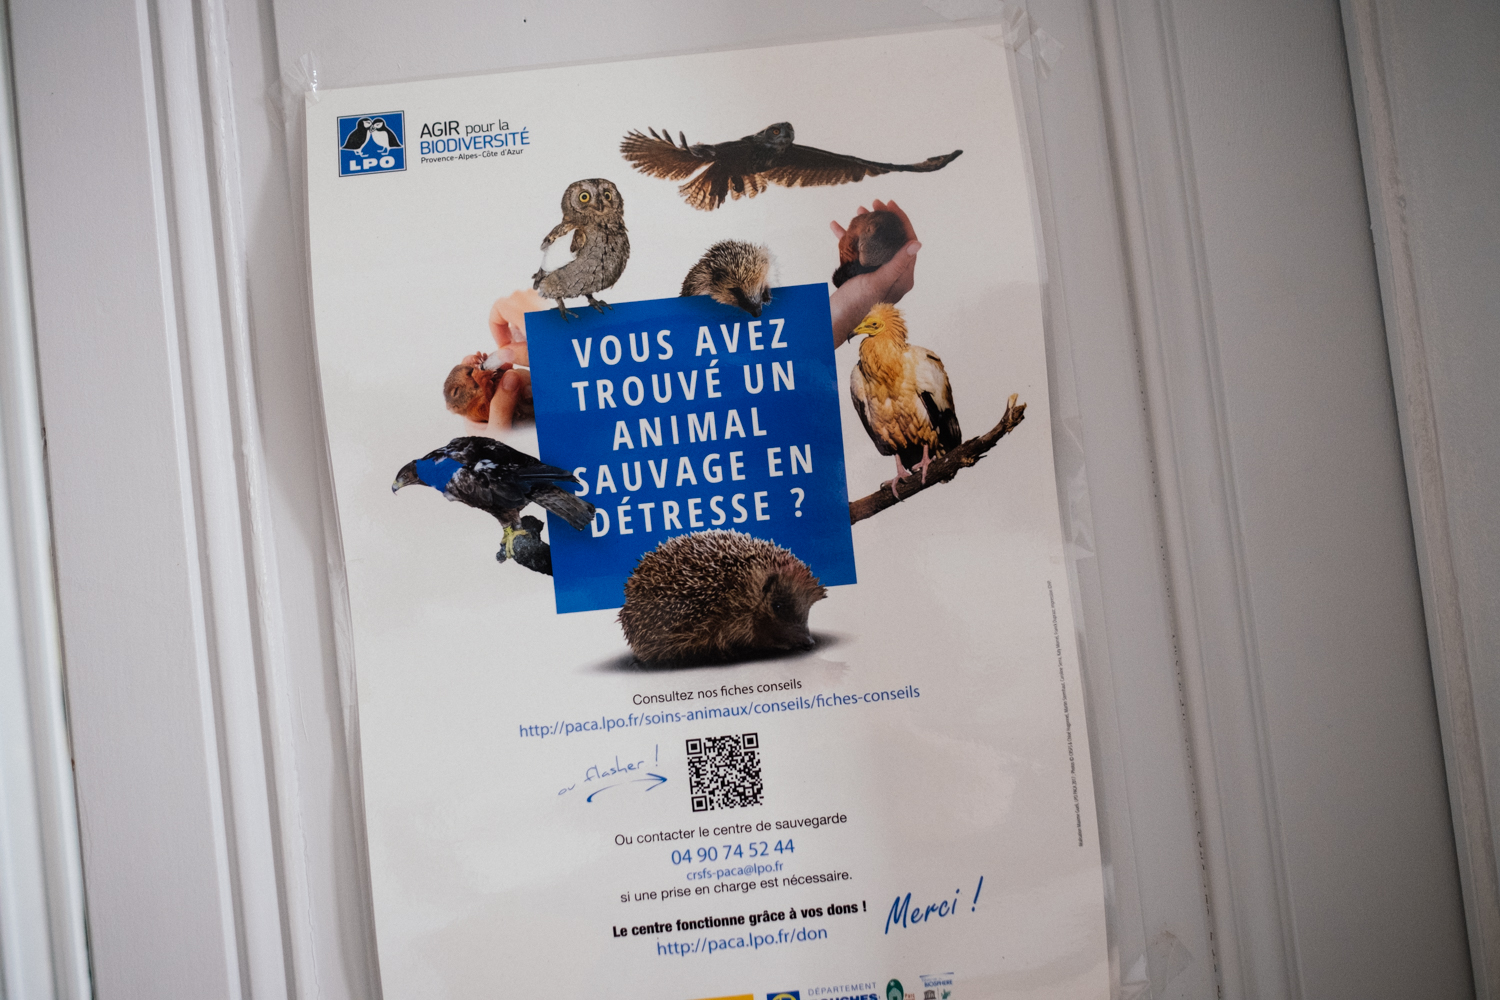 La Ligue pour la protection des oiseaux est une association de protection de l’environnement française fondée en 1912. On peut l’appeler si l’on trouve un animal sauvage blessé © Globe Reporters